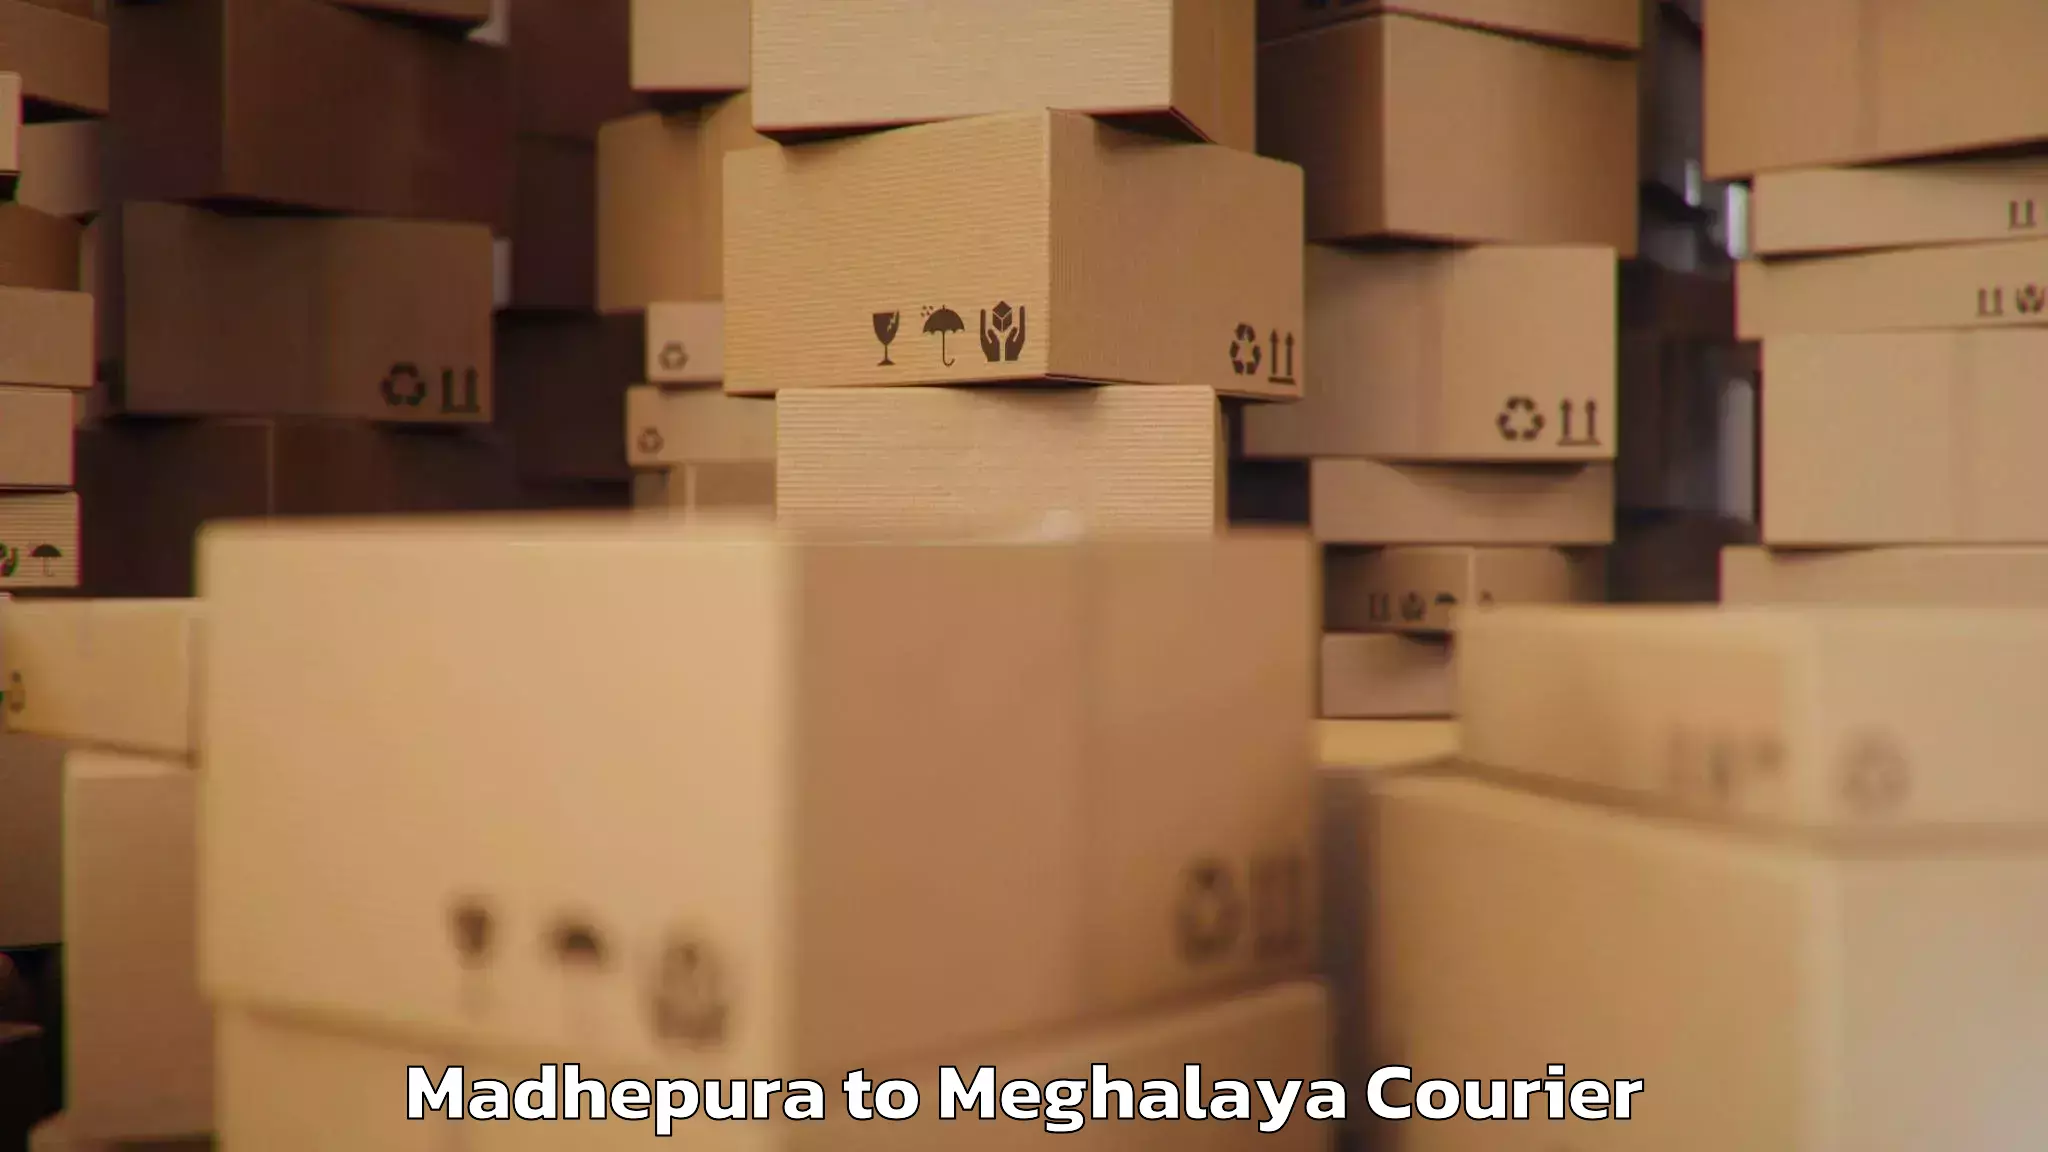 Baggage transport network Madhepura to Phulbari